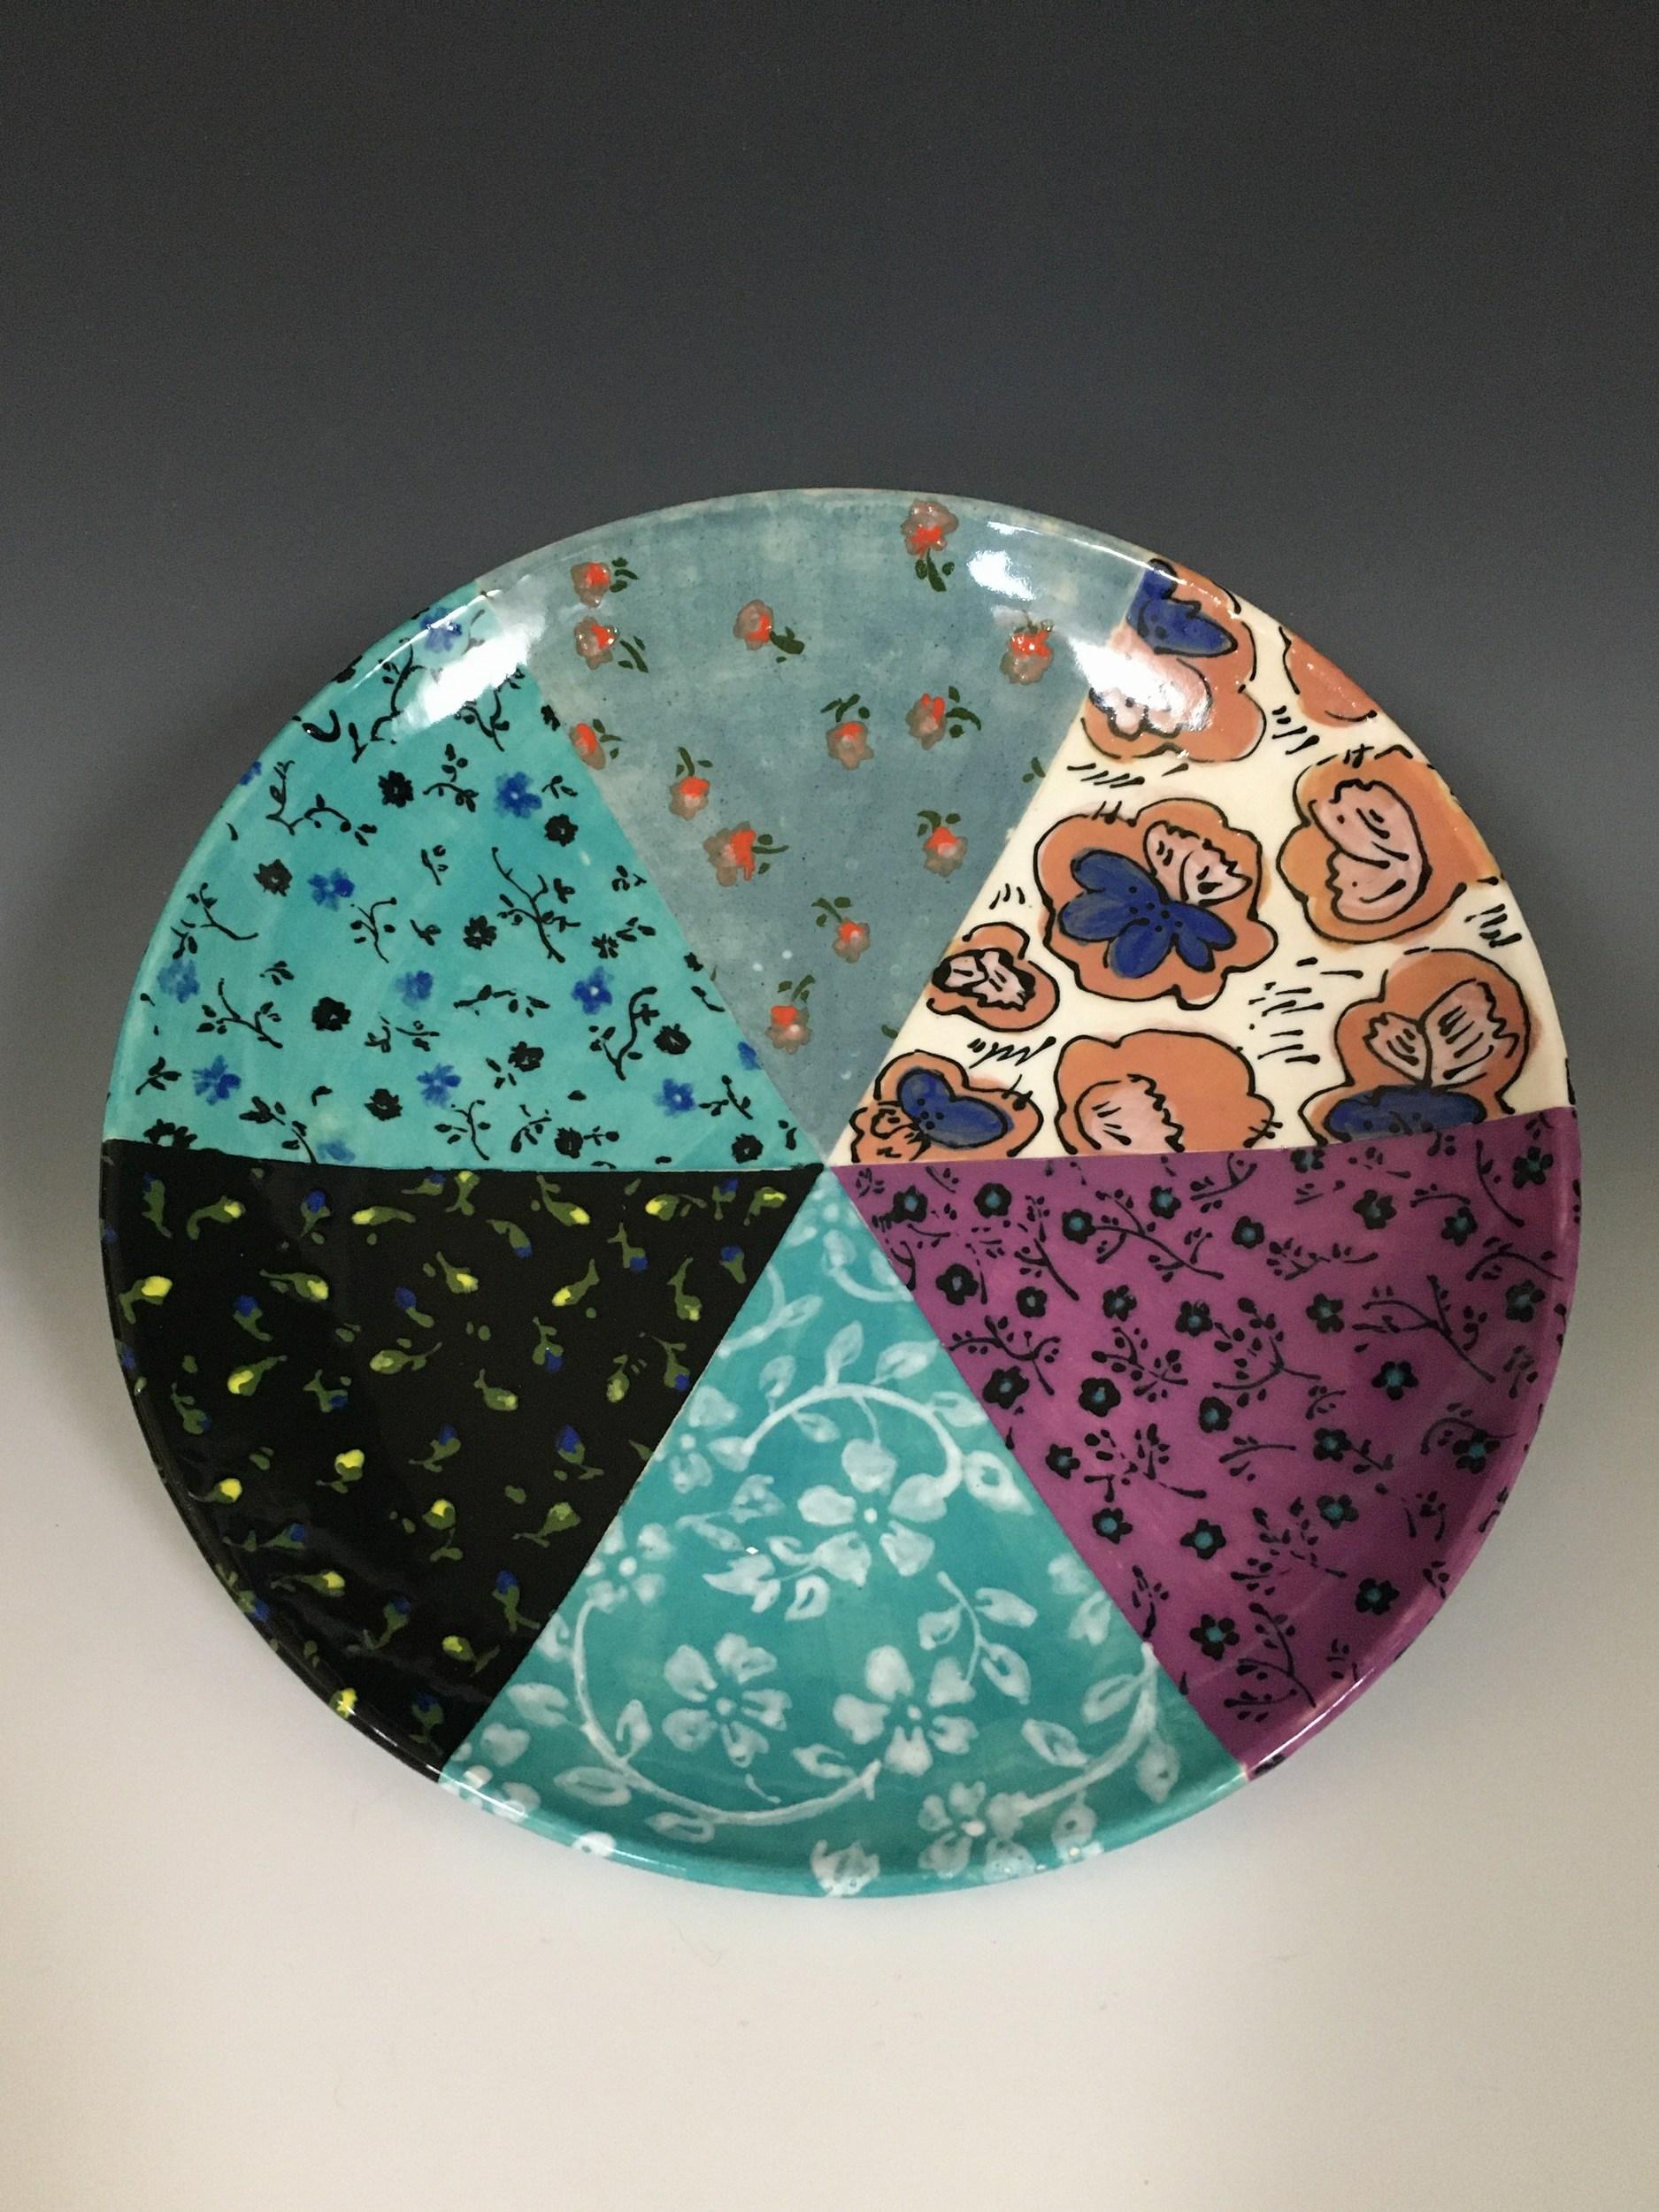 Six Pattern Plate - Mixed Media Art by Rachel Hubbard Kline